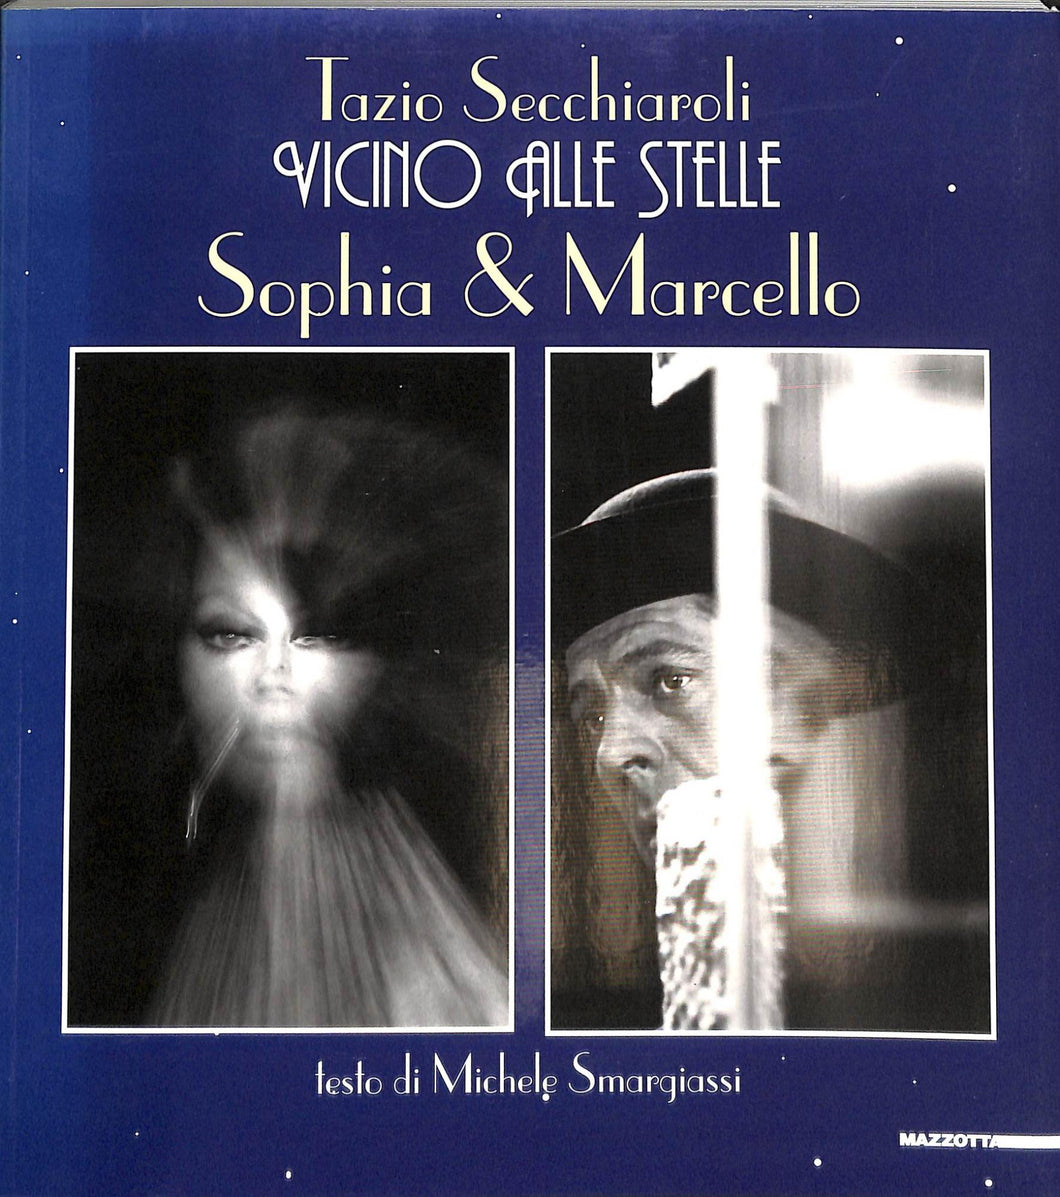 Vicino alle stelle. Sophia & Marcello
di Tazio Secchiaroli, Tatiana Agliani